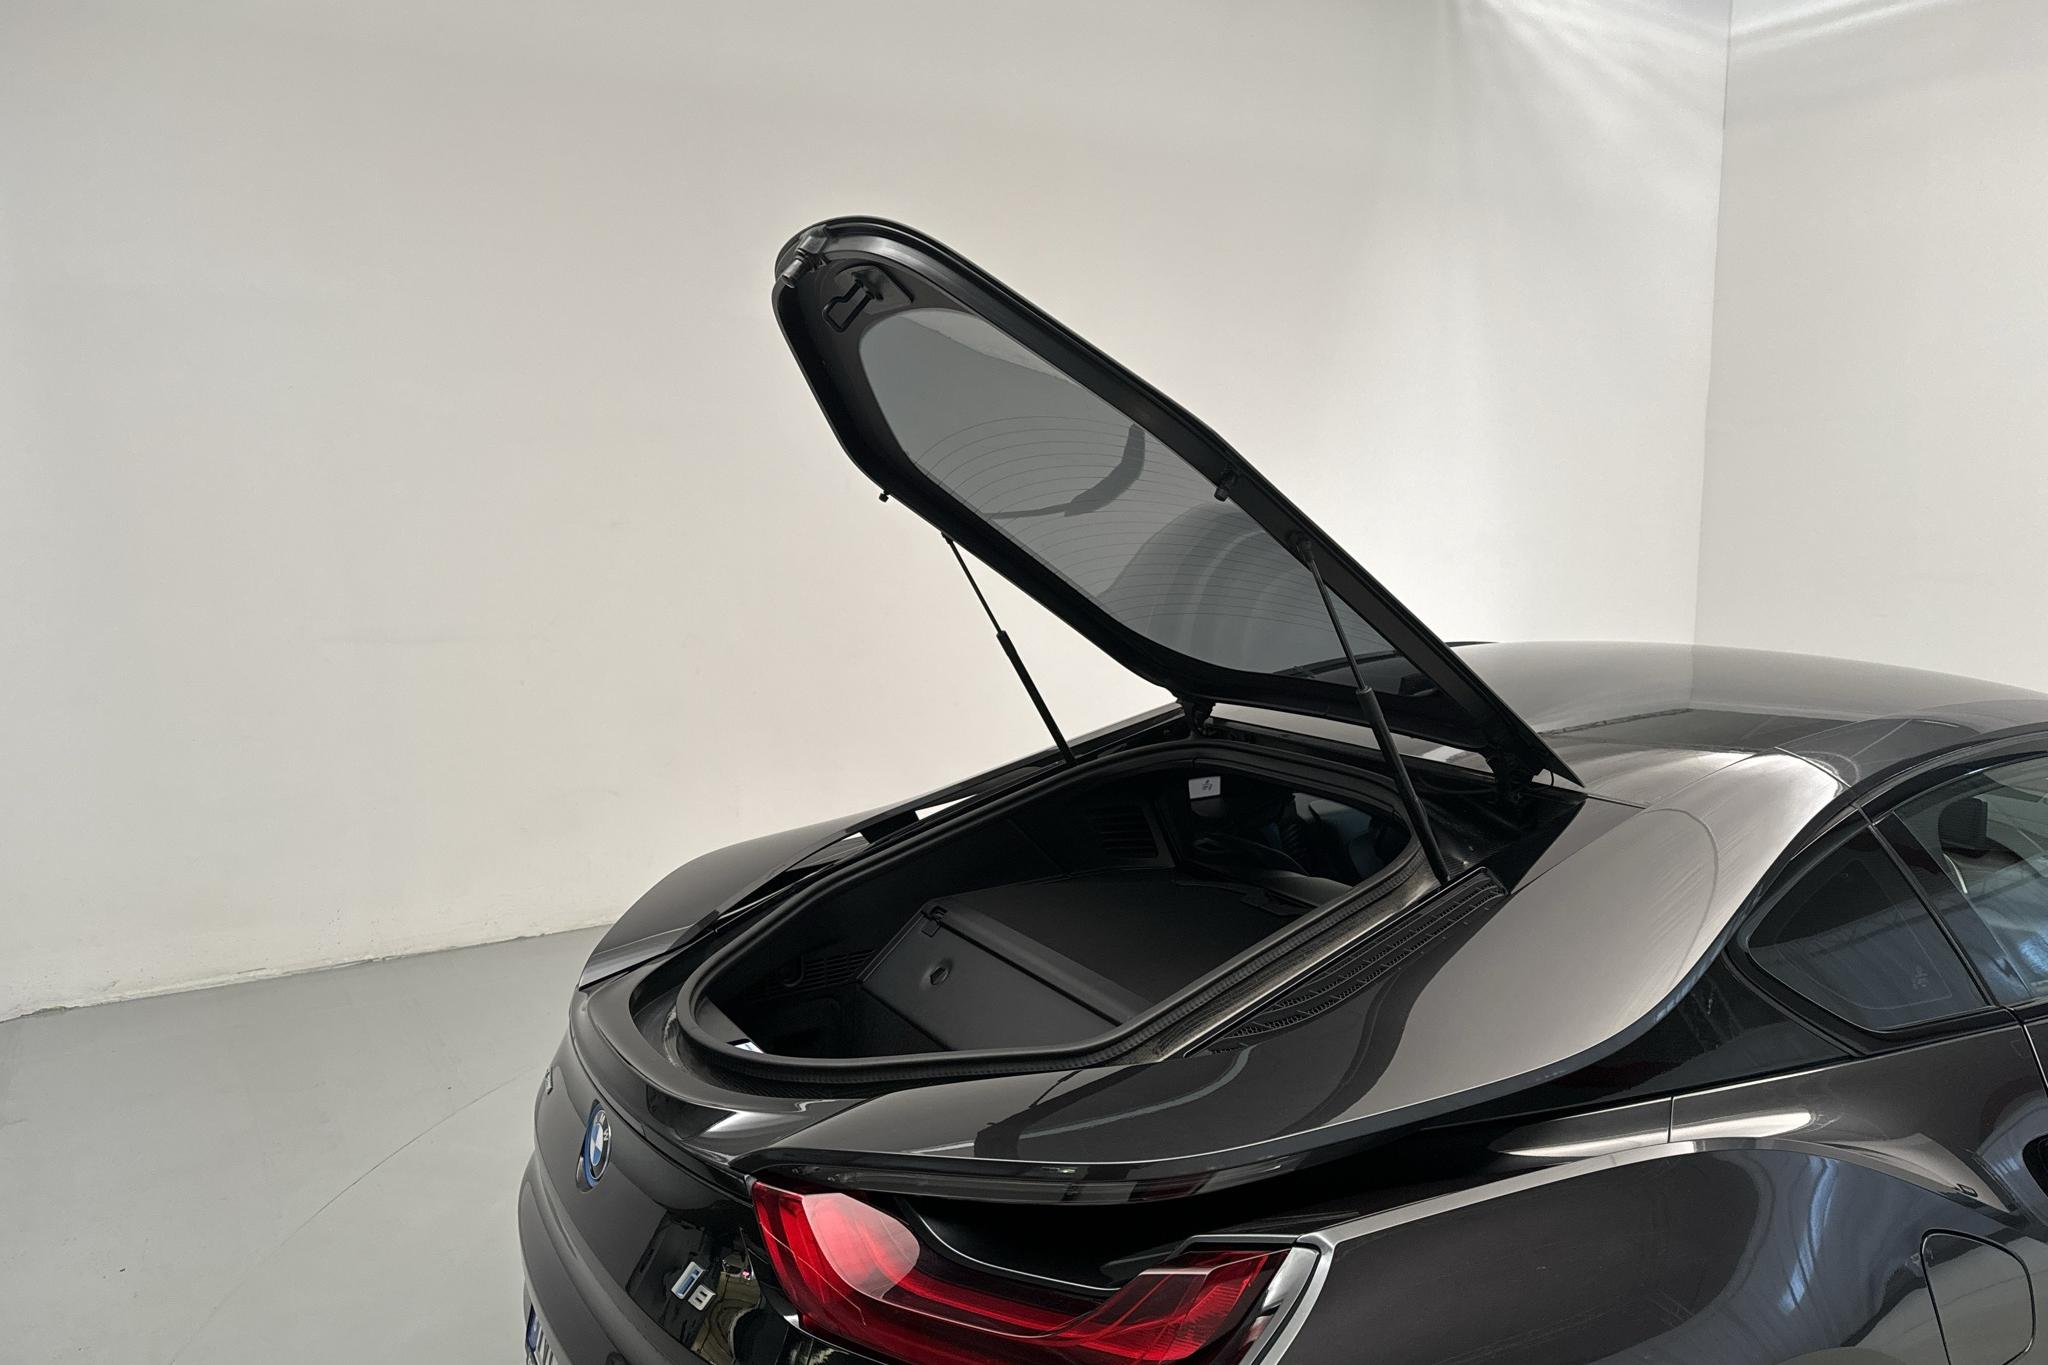 BMW i8, I12 (374hk) - 73 480 km - Automaattinen - harmaa - 2016